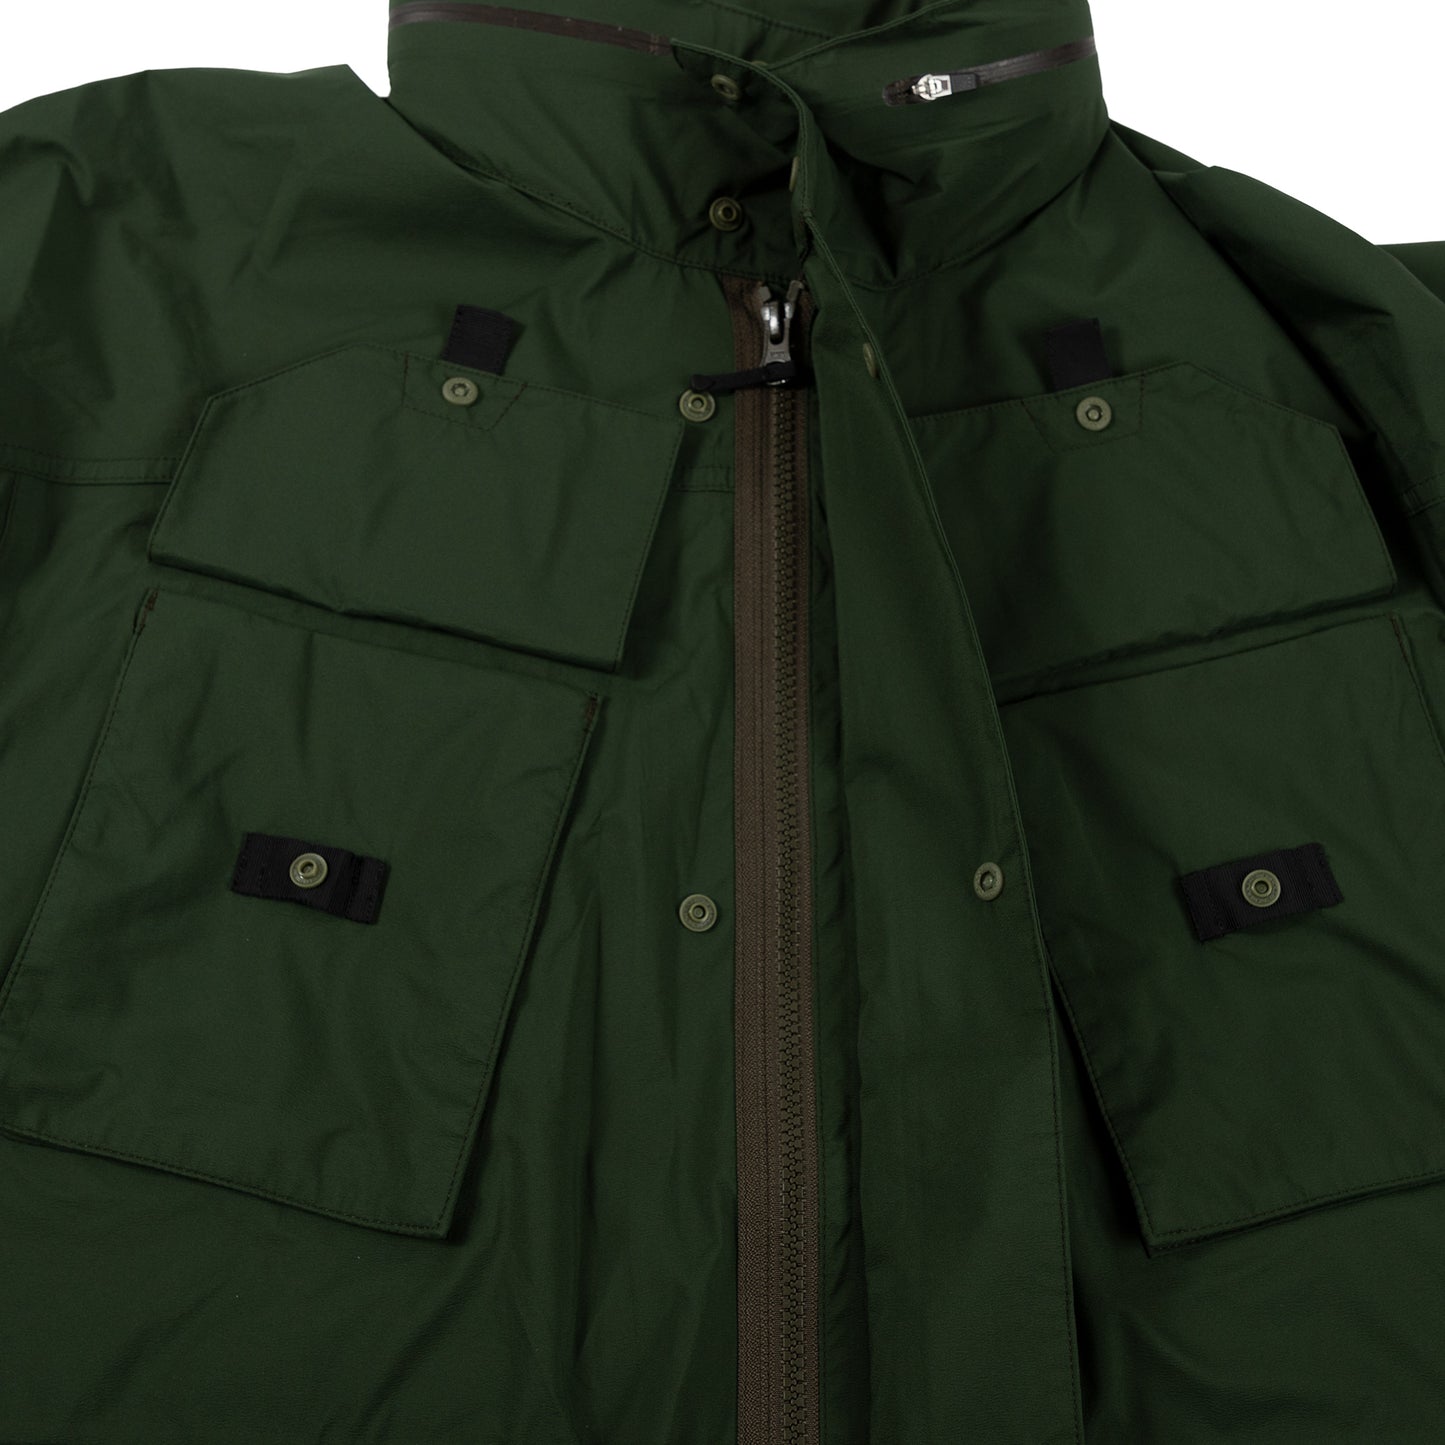 Goldwin Traveler Blouson in Cypress Green Outerwear sportwear hooded hood rain gear all weather zipper